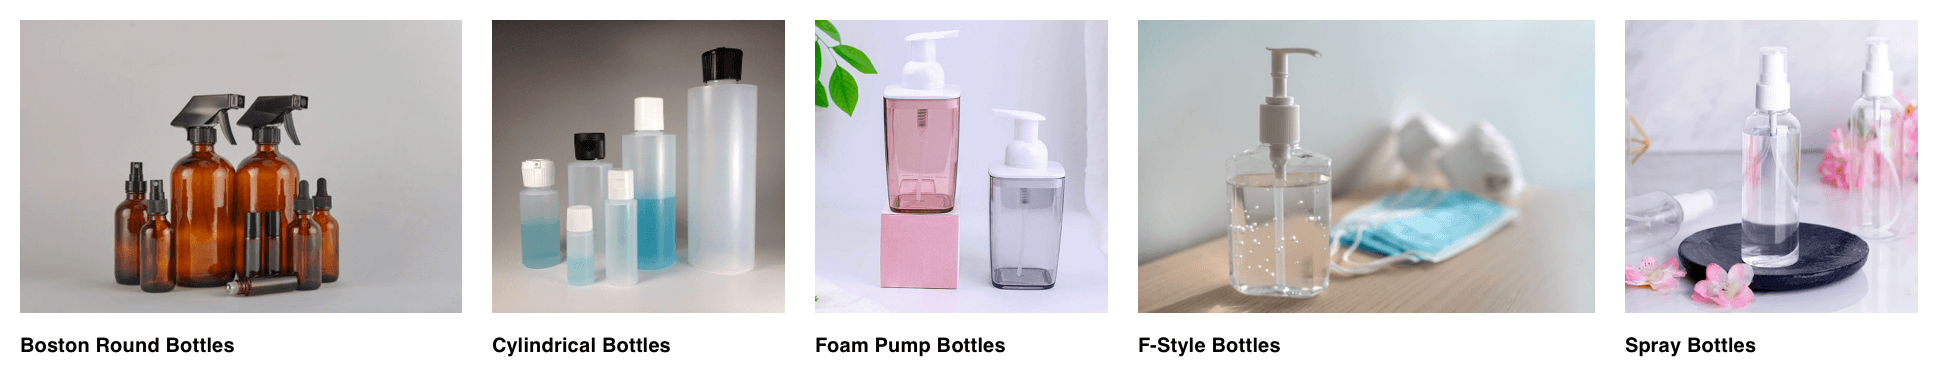 pumpsspace bottles